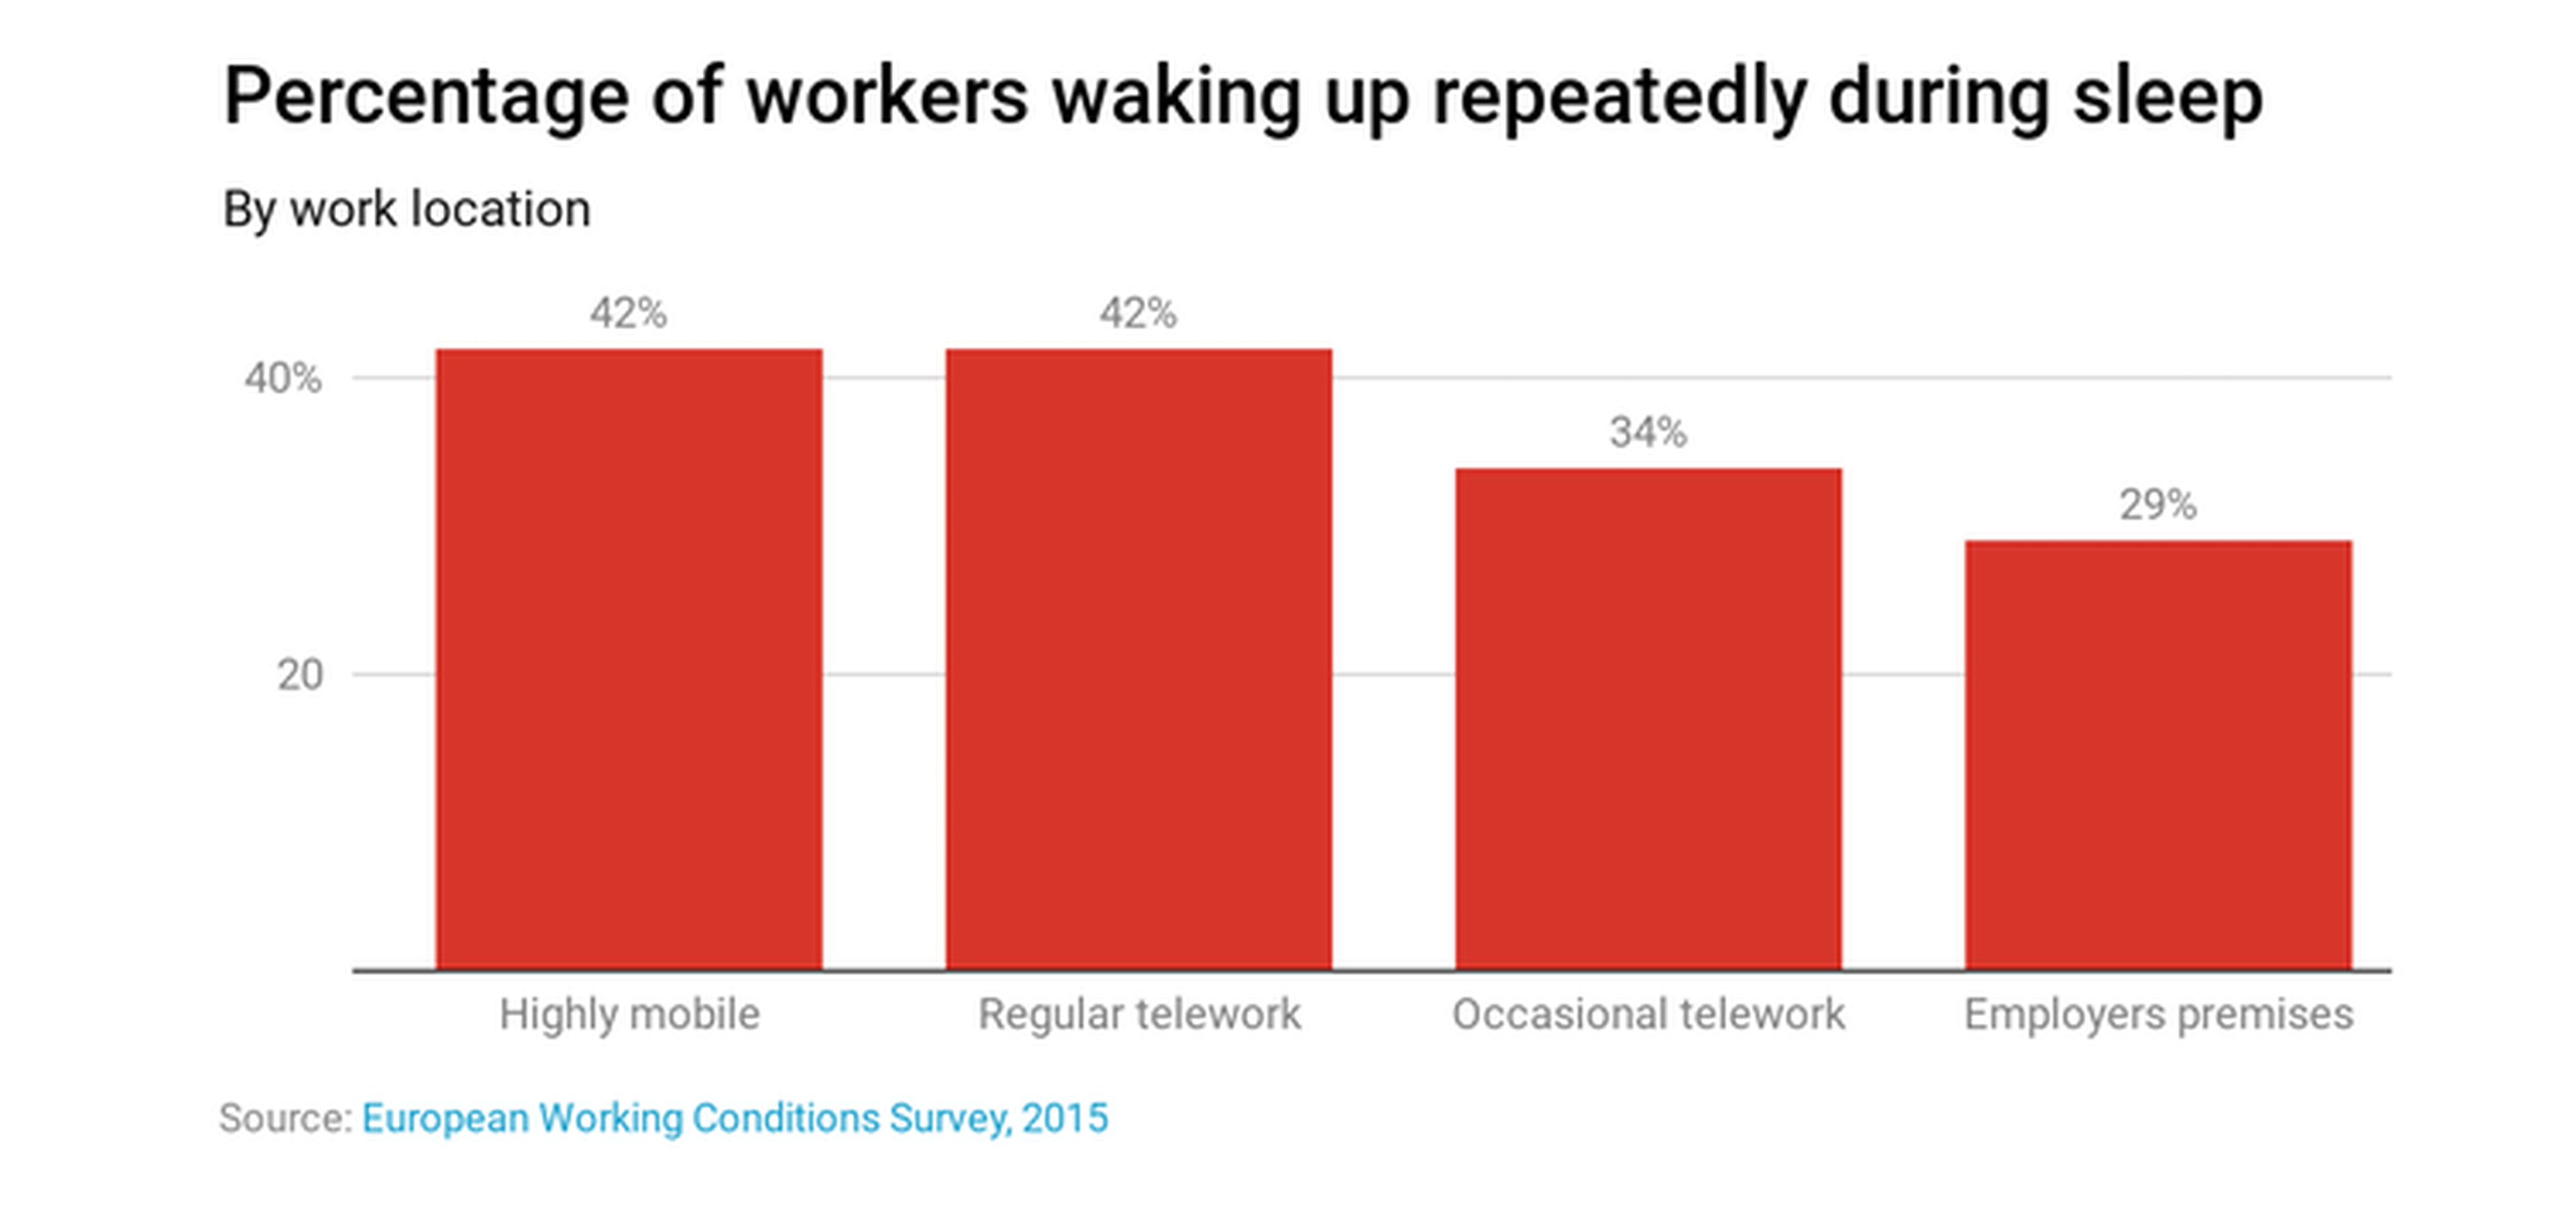 Porcentaje de trabajadores que dicen despertarse varias veces mientras duermen.